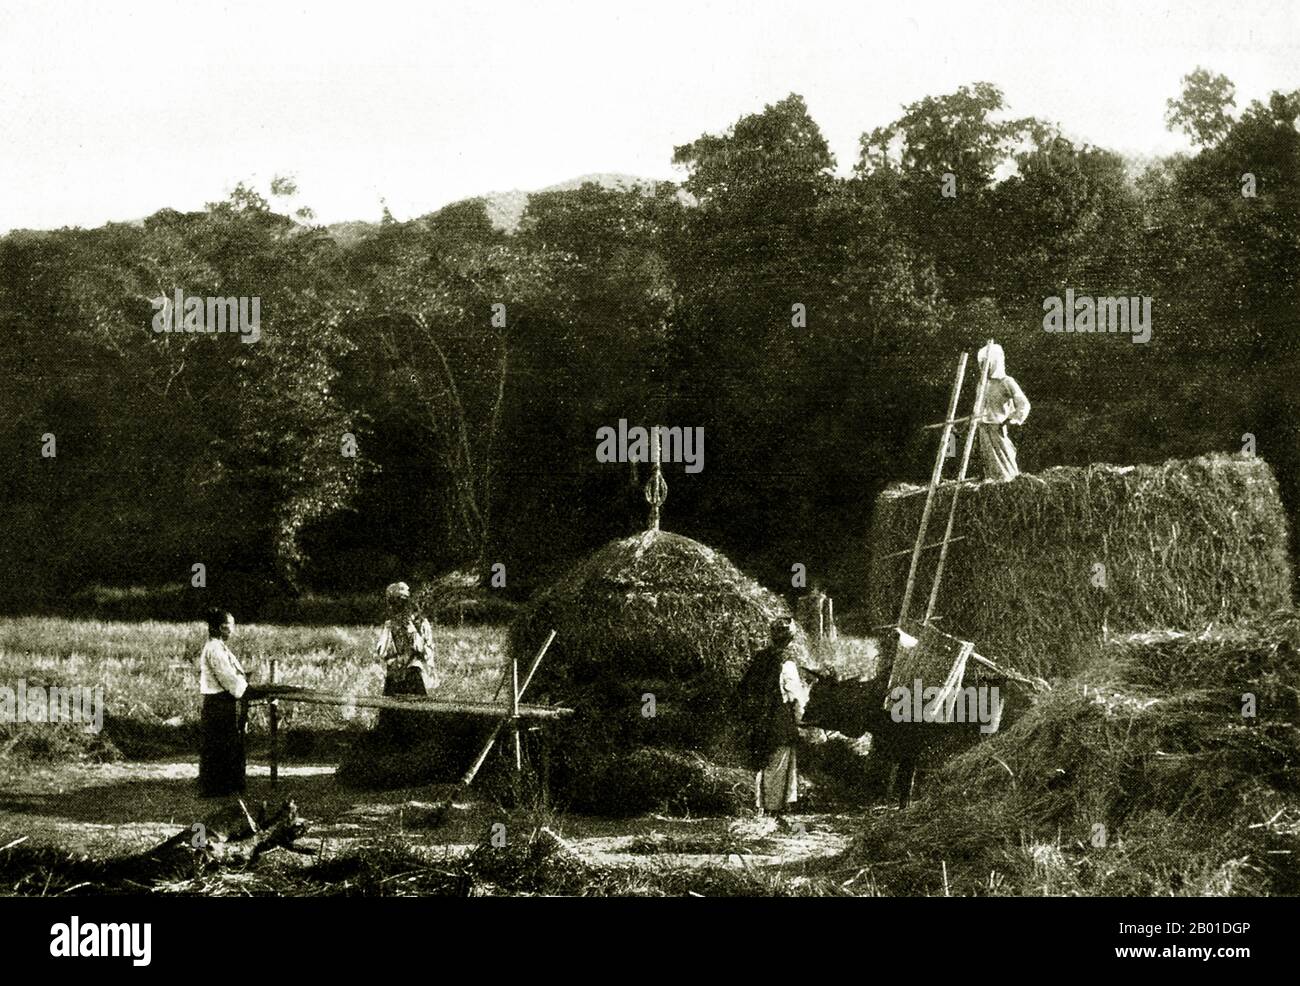 Birmanie : les éleveurs de Shan battent le riz, c. 1892-1896. Situé dans le nord-est du pays, l’État Shan couvre un quart de la masse terrestre de la Birmanie. Elle était traditionnellement séparée en principautés et se compose principalement de Shan, Burman Pa-O, Intha, Taungyo, Danu, Palaung et Kachin. Banque D'Images